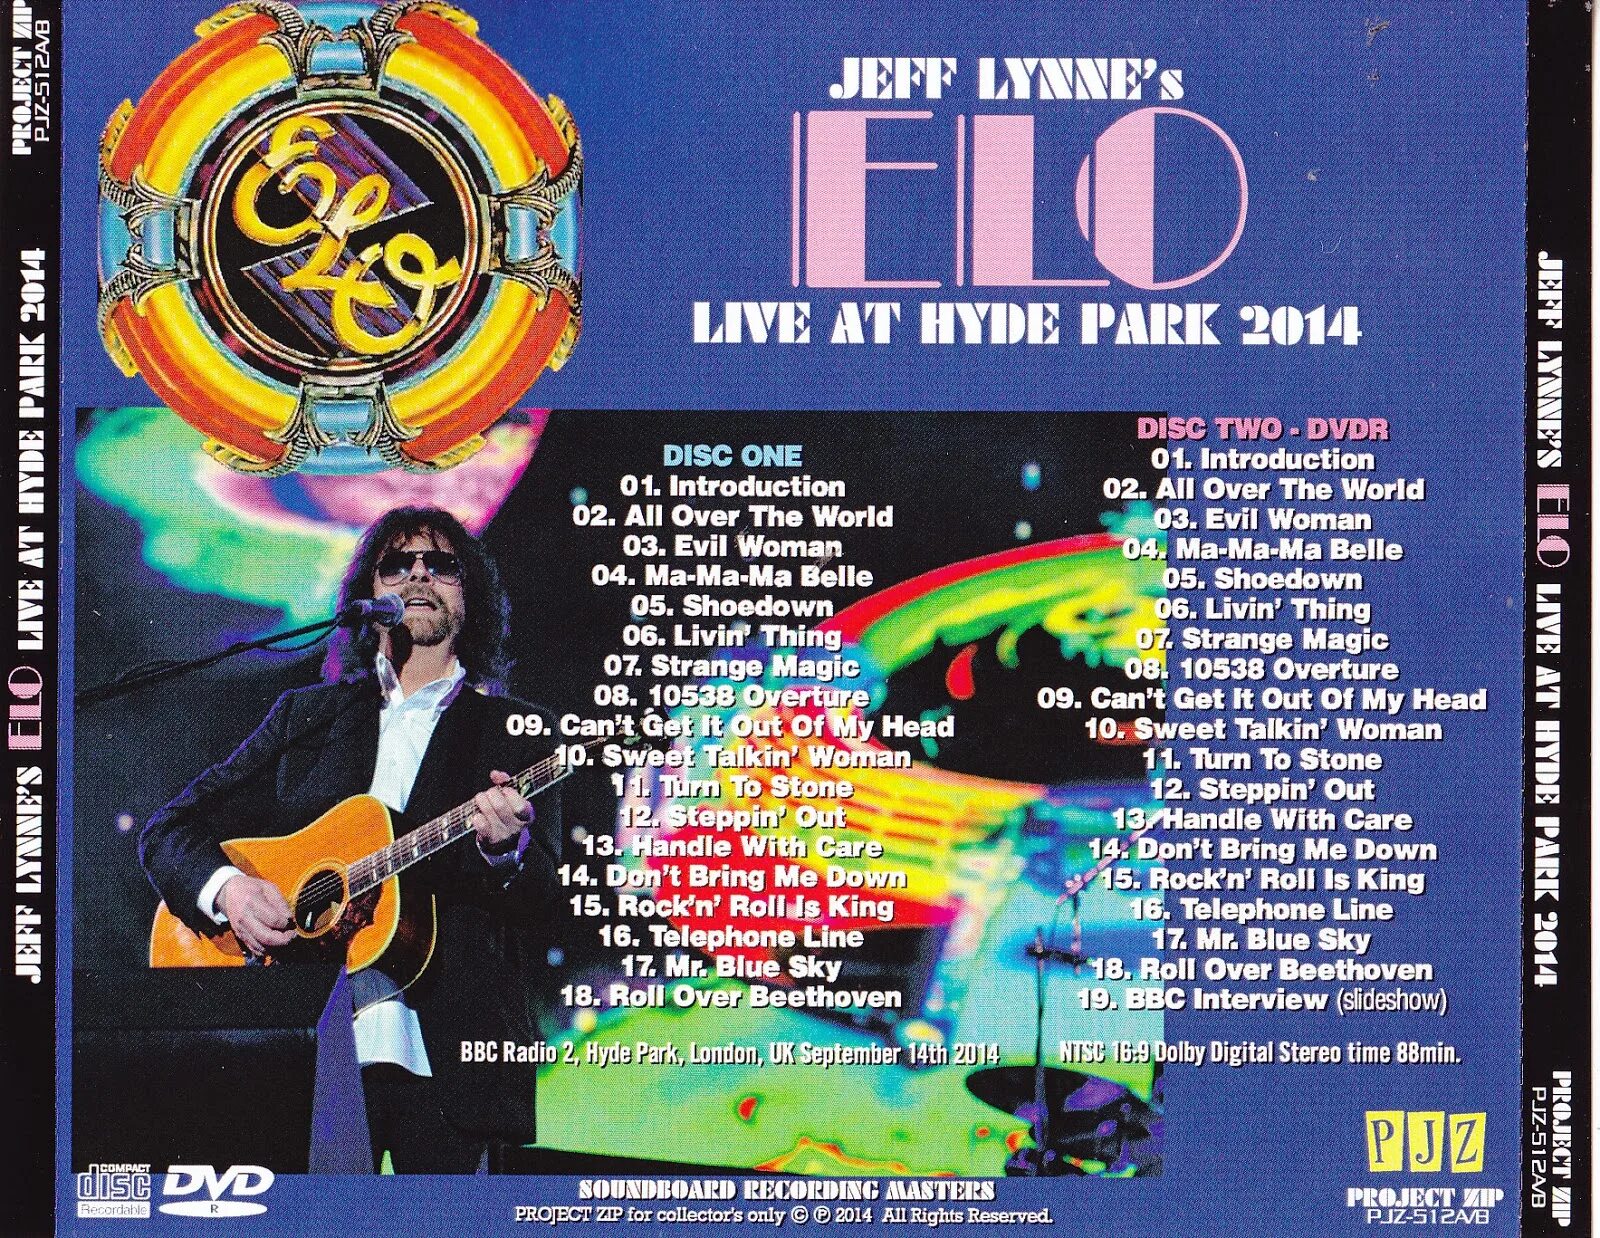 Хайд текст. Jeff Lynne's Elo. Джефф Линн. Live at Hyde Park 2004. Jeff Lynnes Elo - Mr Blue Sky (Live at Hyde Park).